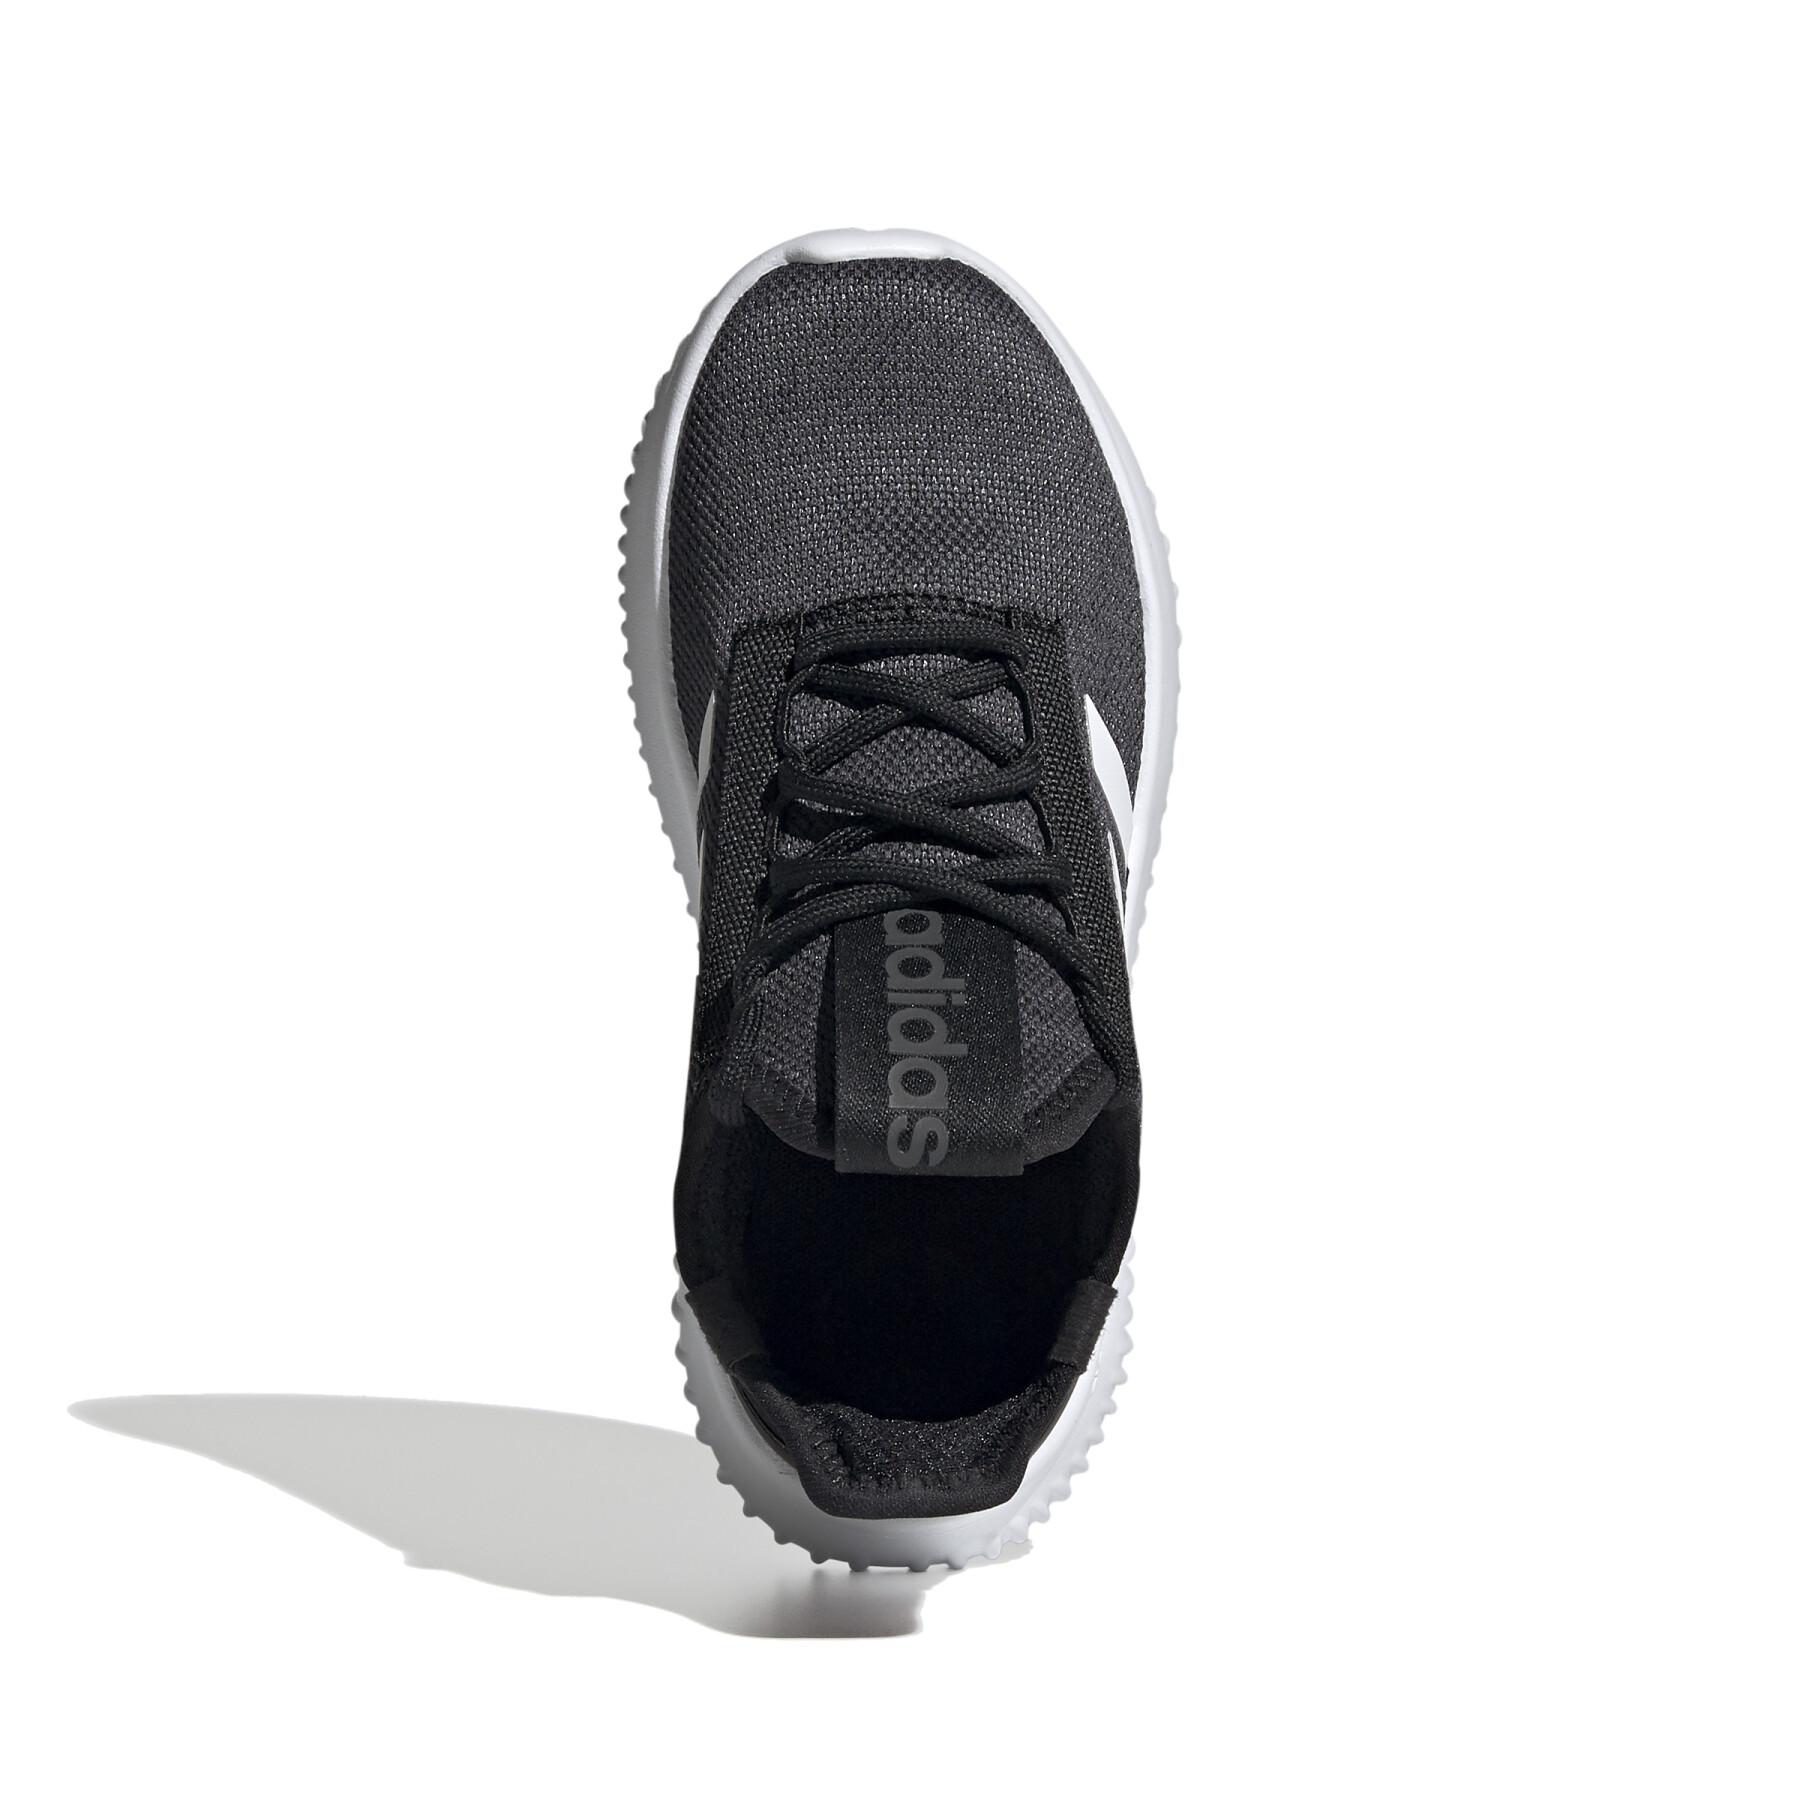 Scarpe running per bambini Adidas Kaptir 2.0